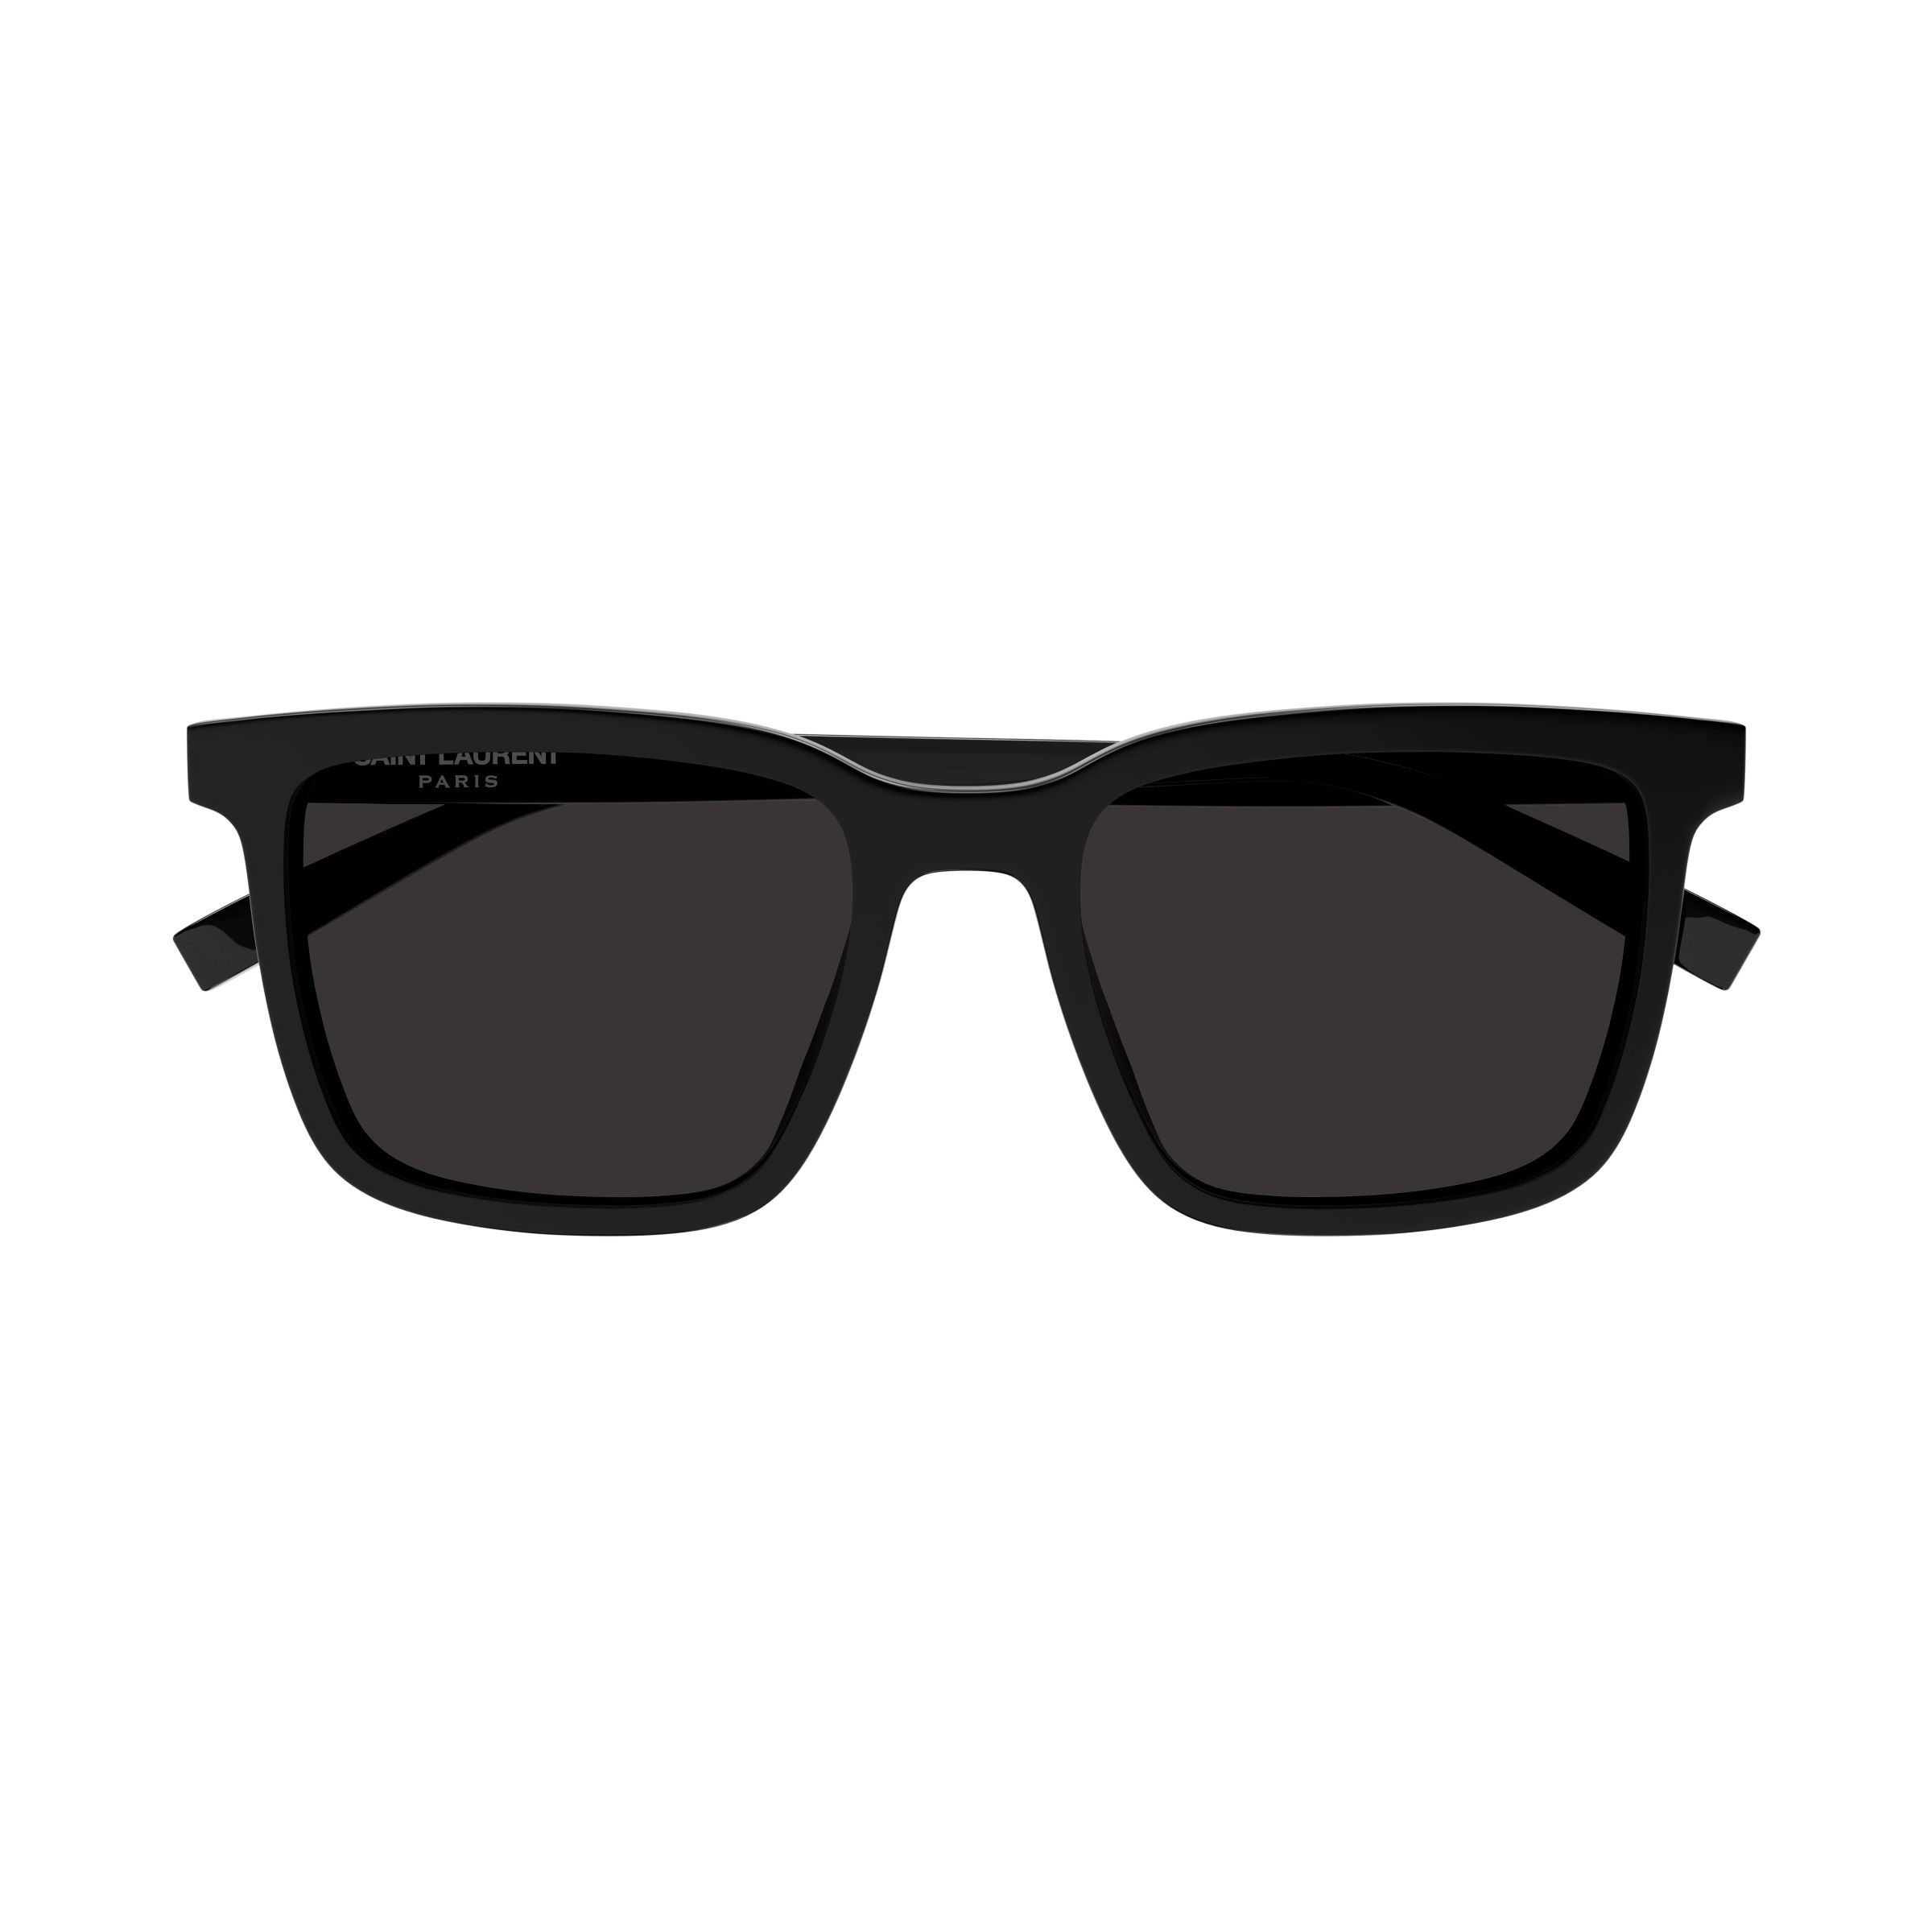 SL 500 Square Sunglasses 1 - size 54